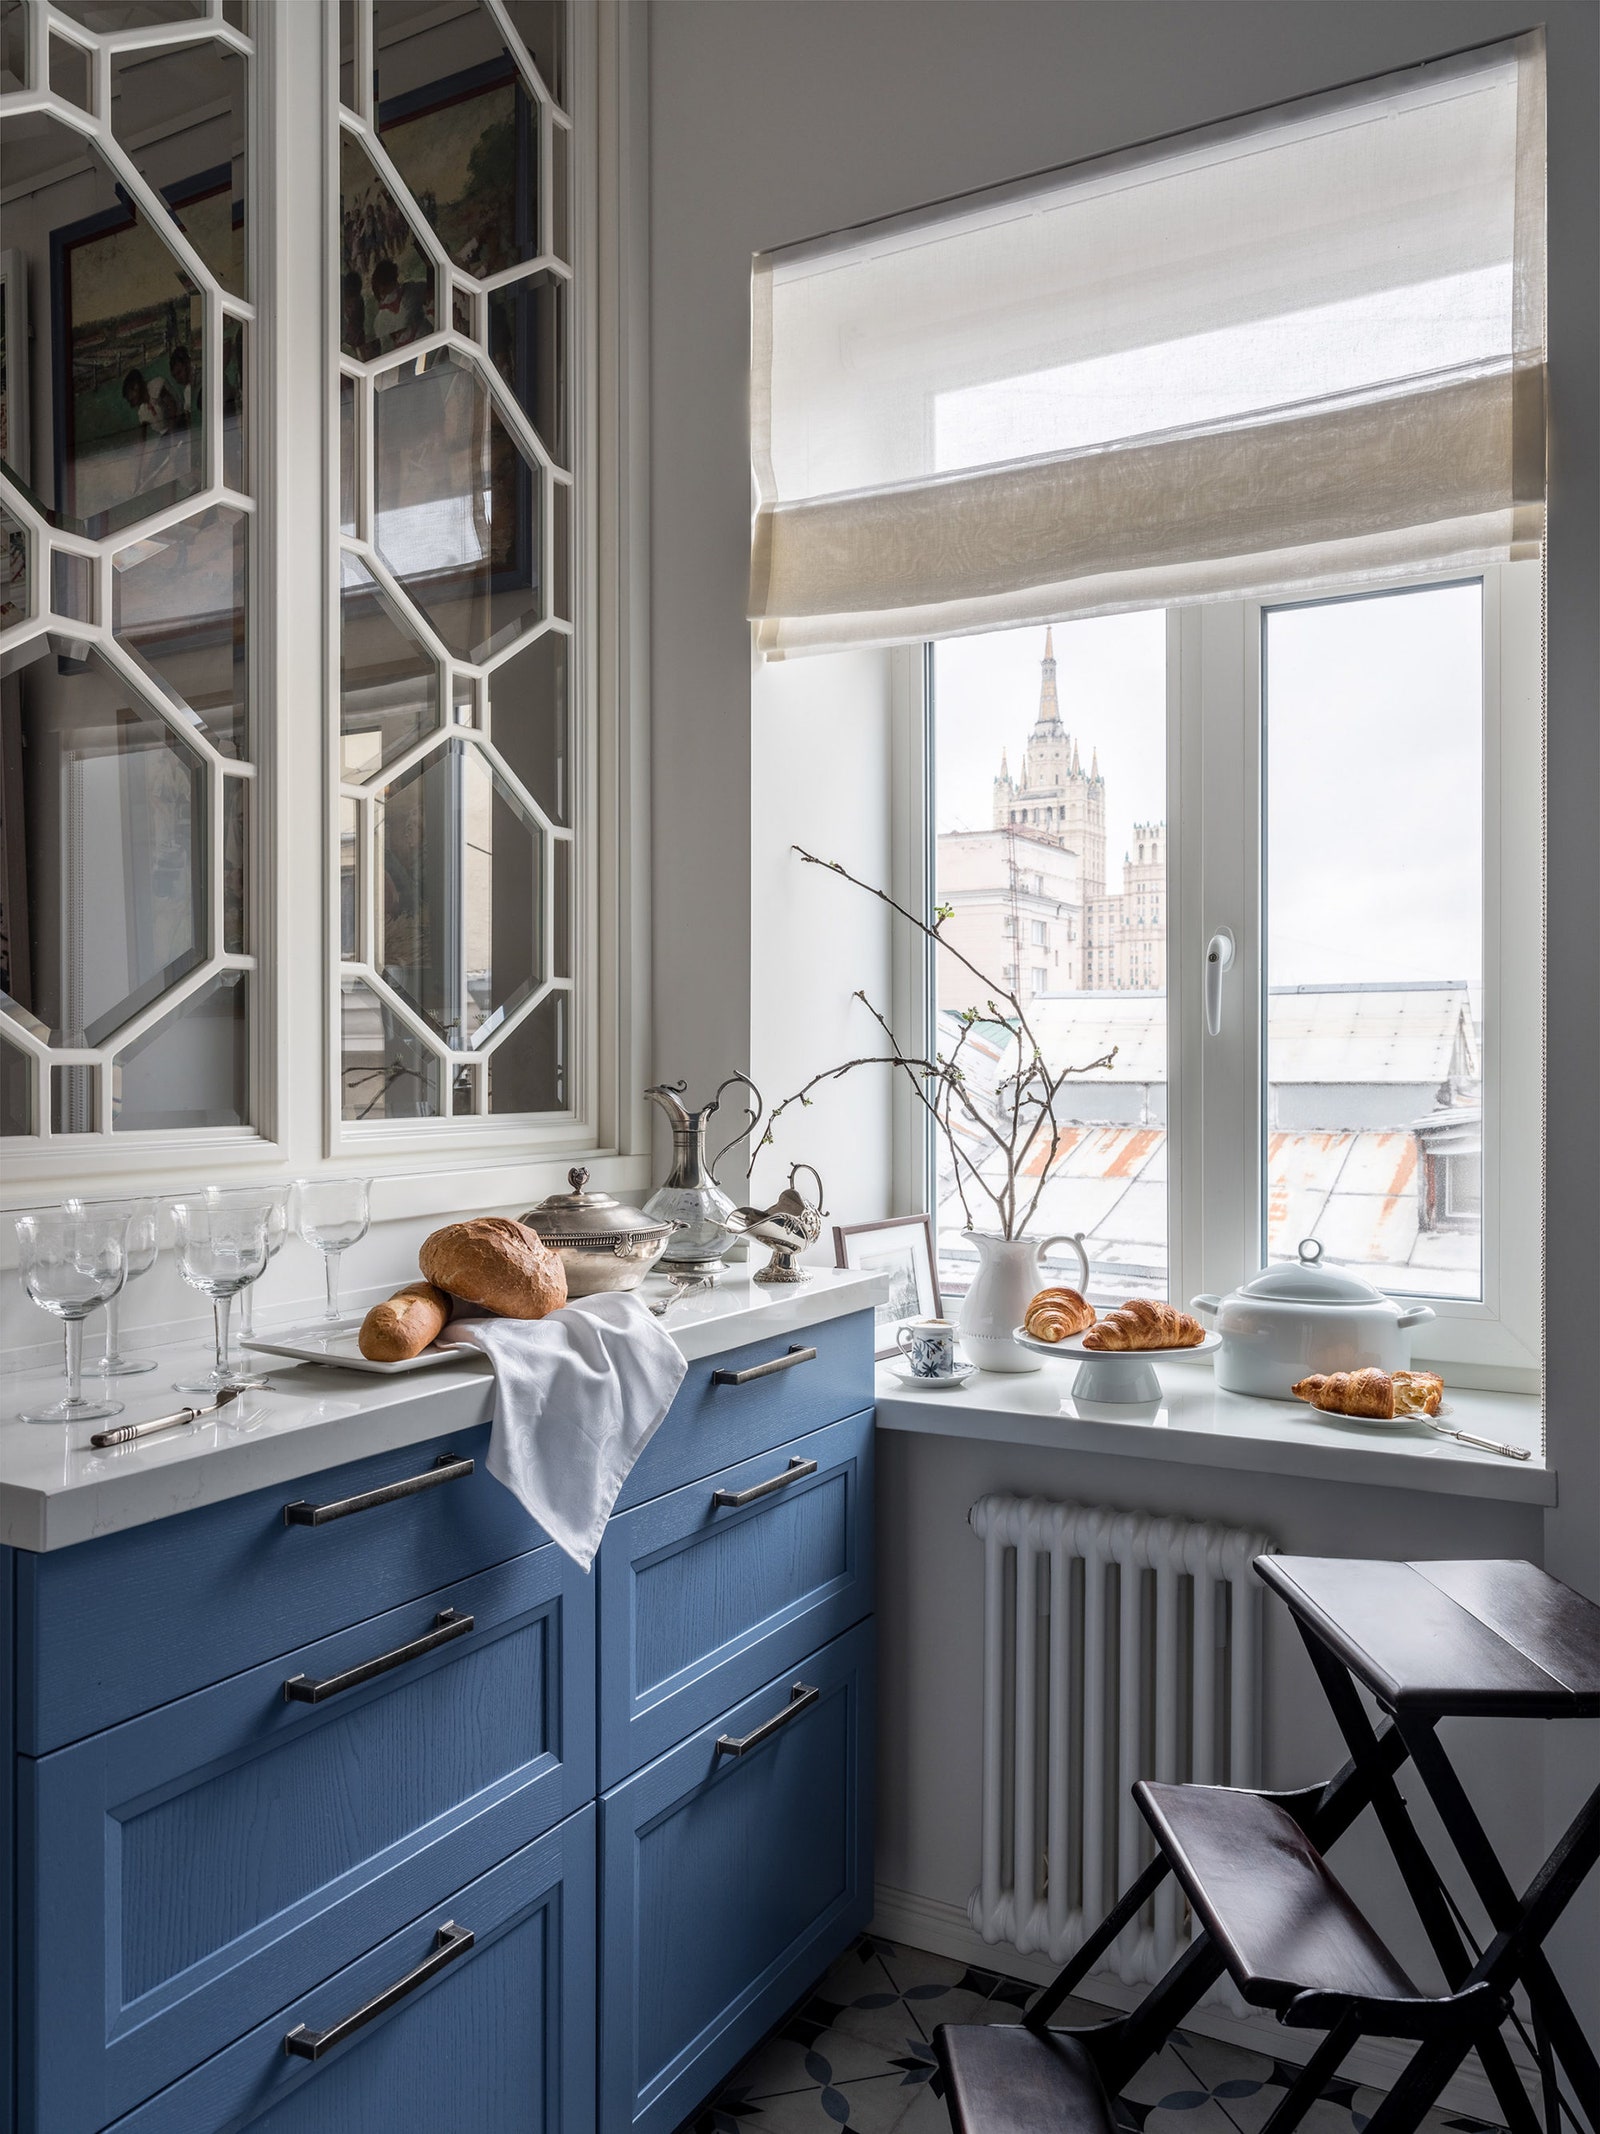 Кухня в квартире по проекту Кати Чистовой. Фото Евгений Кулибаба стилист Дарья Соболева.